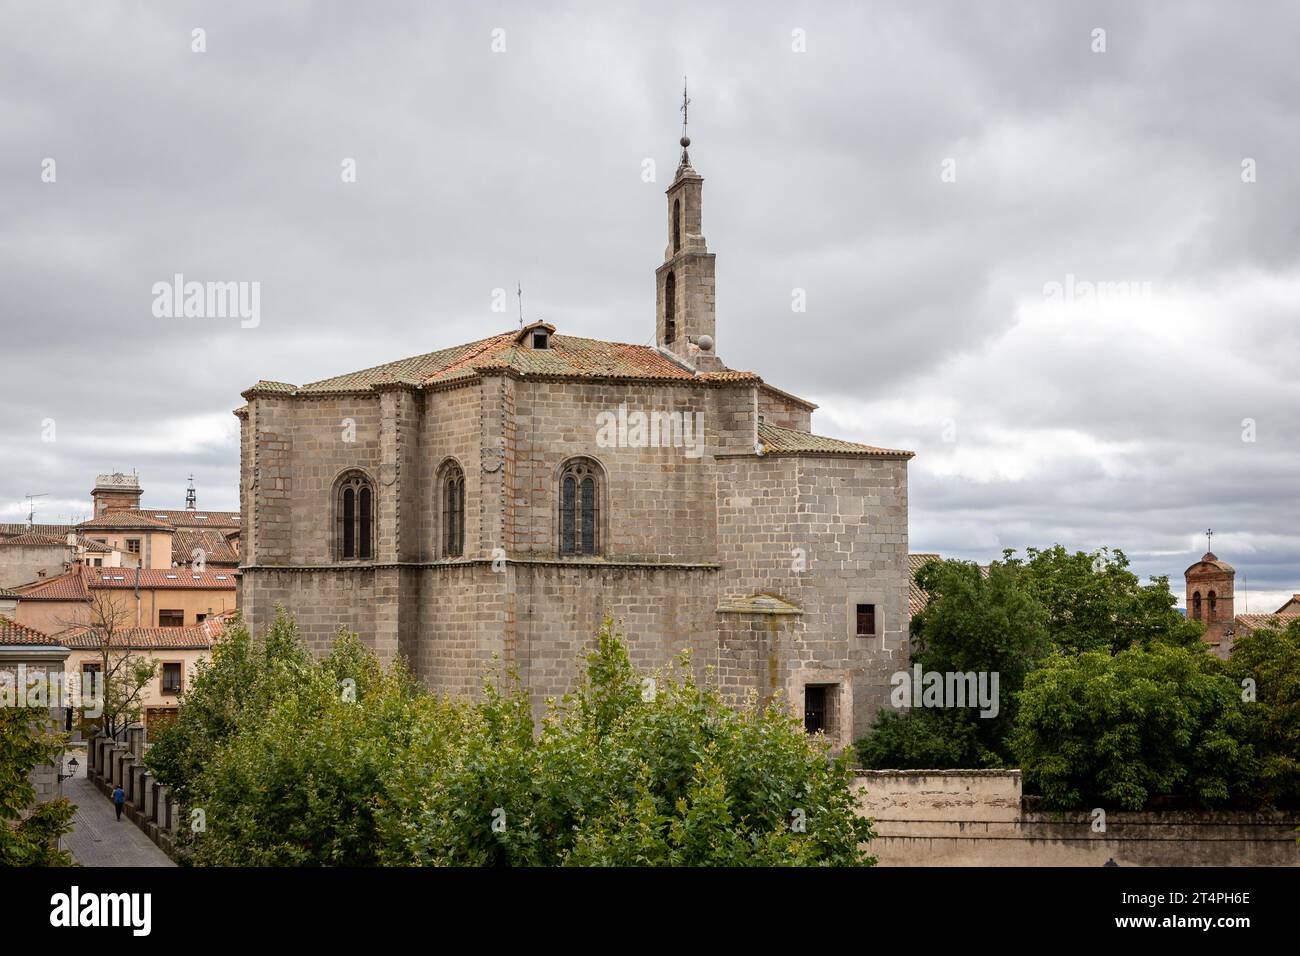 Die Mosen Rubi Kapelle, ein ehemaliges Kloster der Dominikanerinnen im gotischen Archivstil mit Glockenturm von der Mauer von Avila, Spanien. Stockfoto